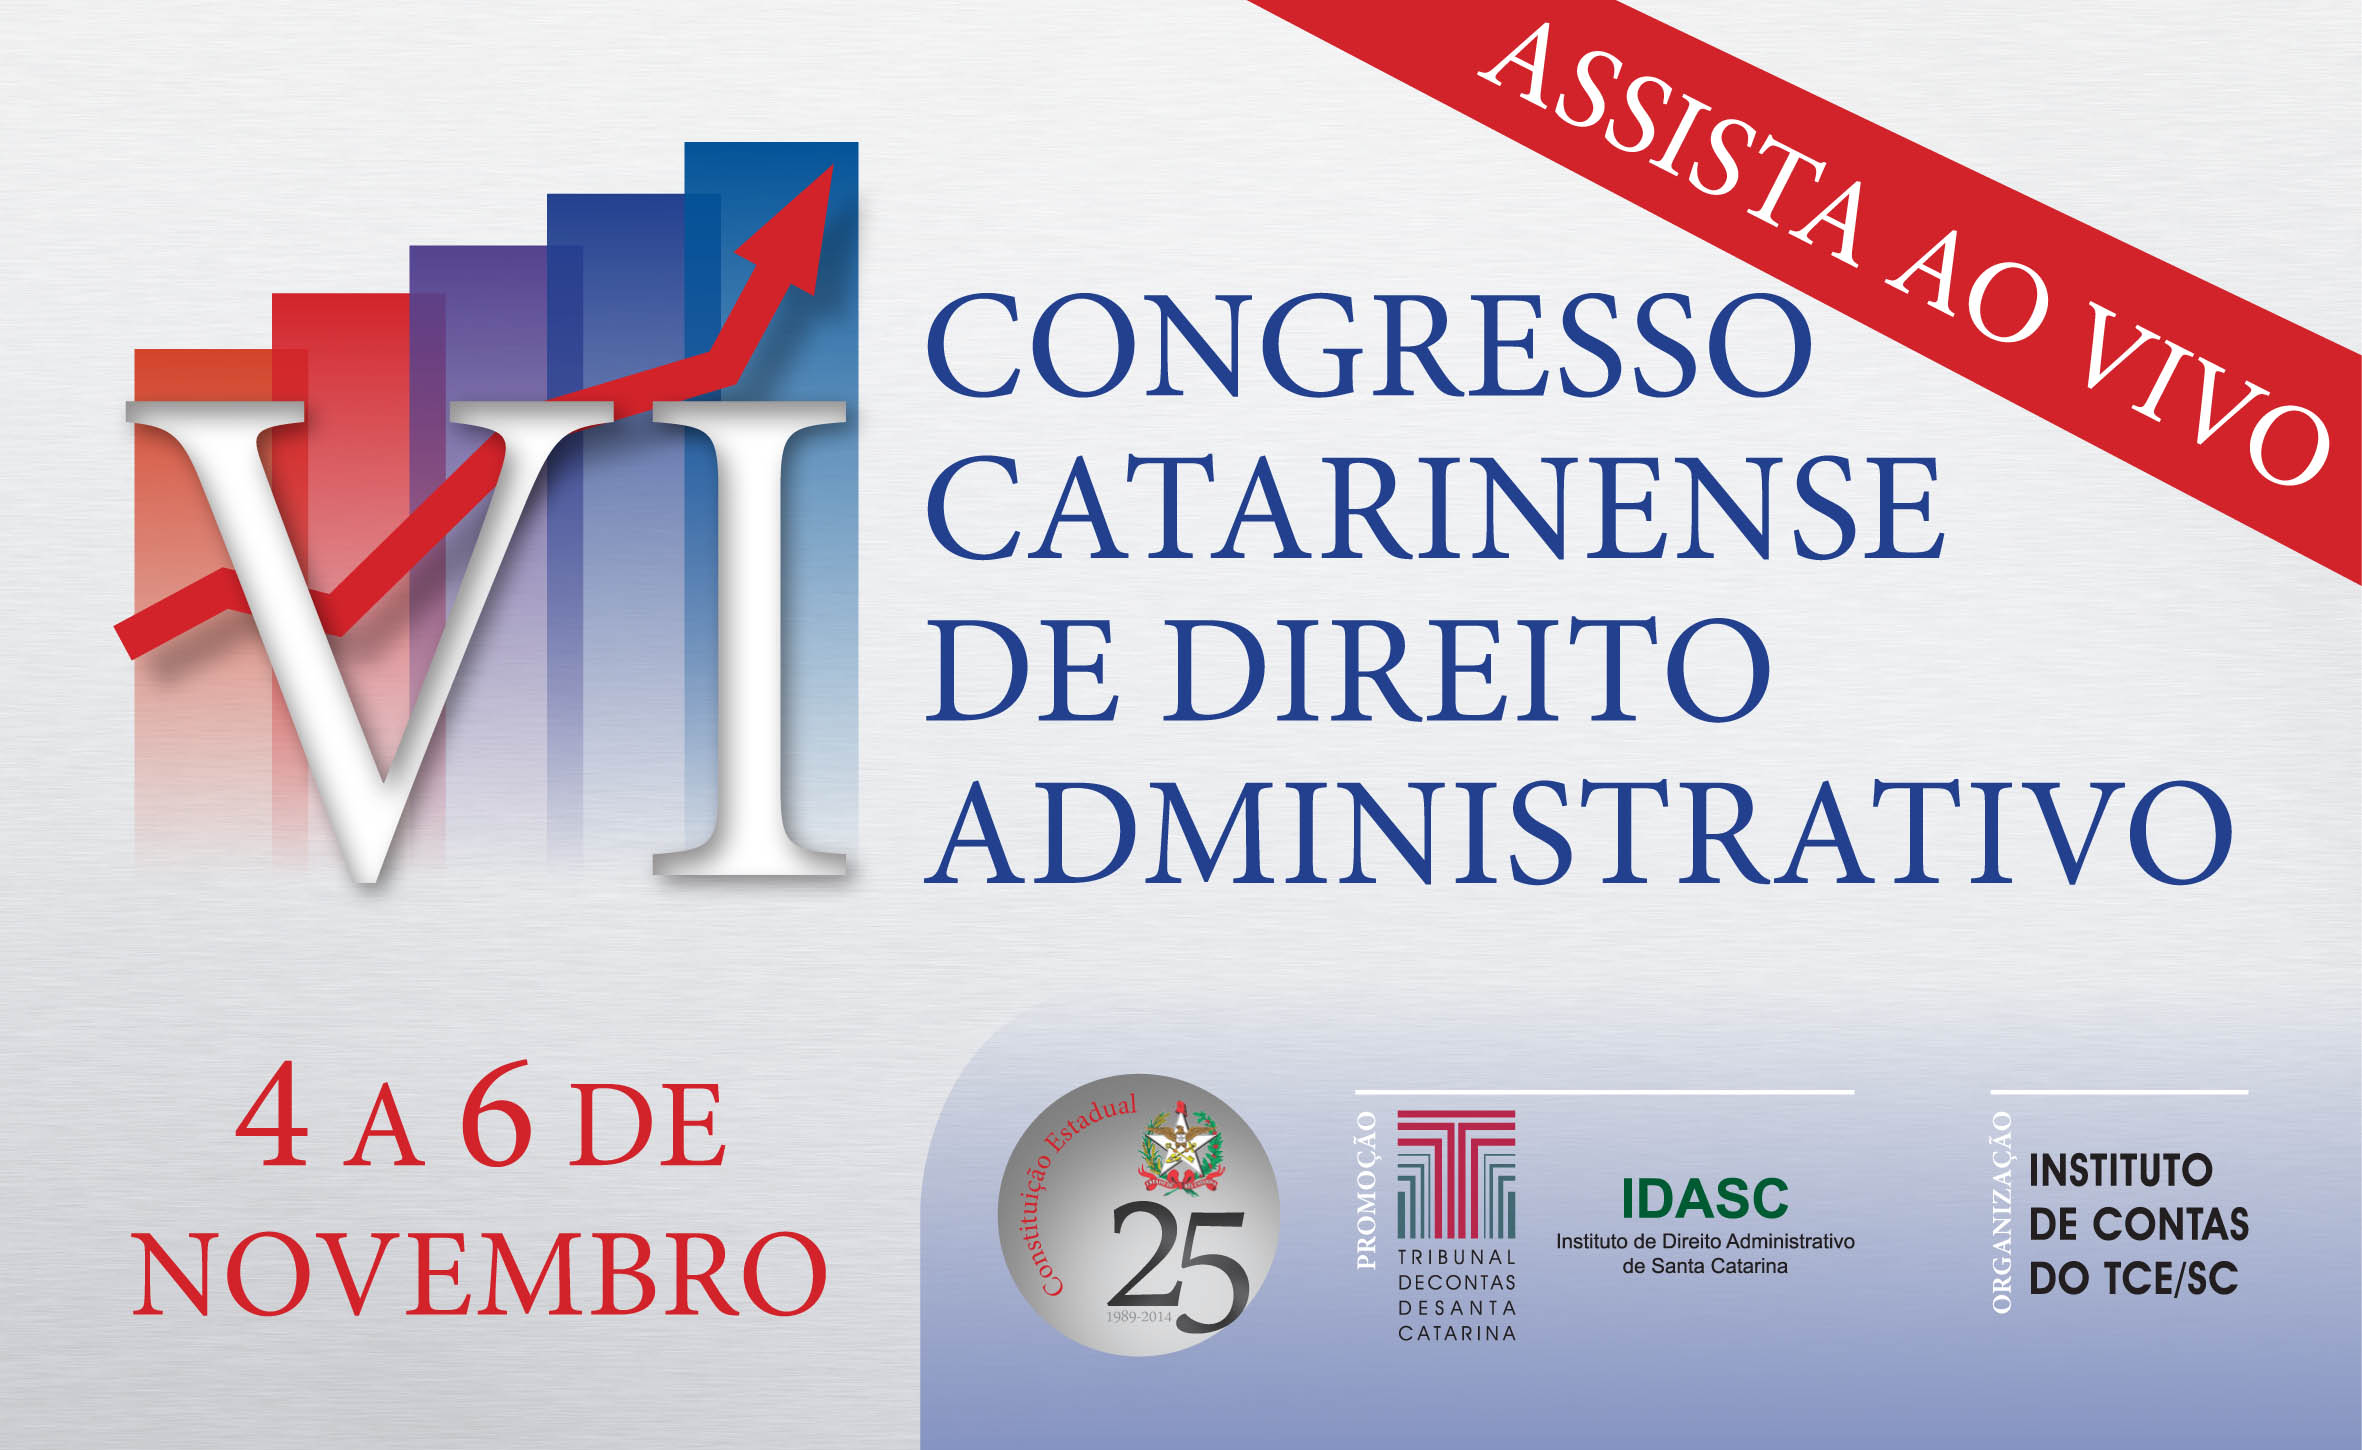 Assista ao vivo o VI Congresso Catarinense de Direito Administrativo